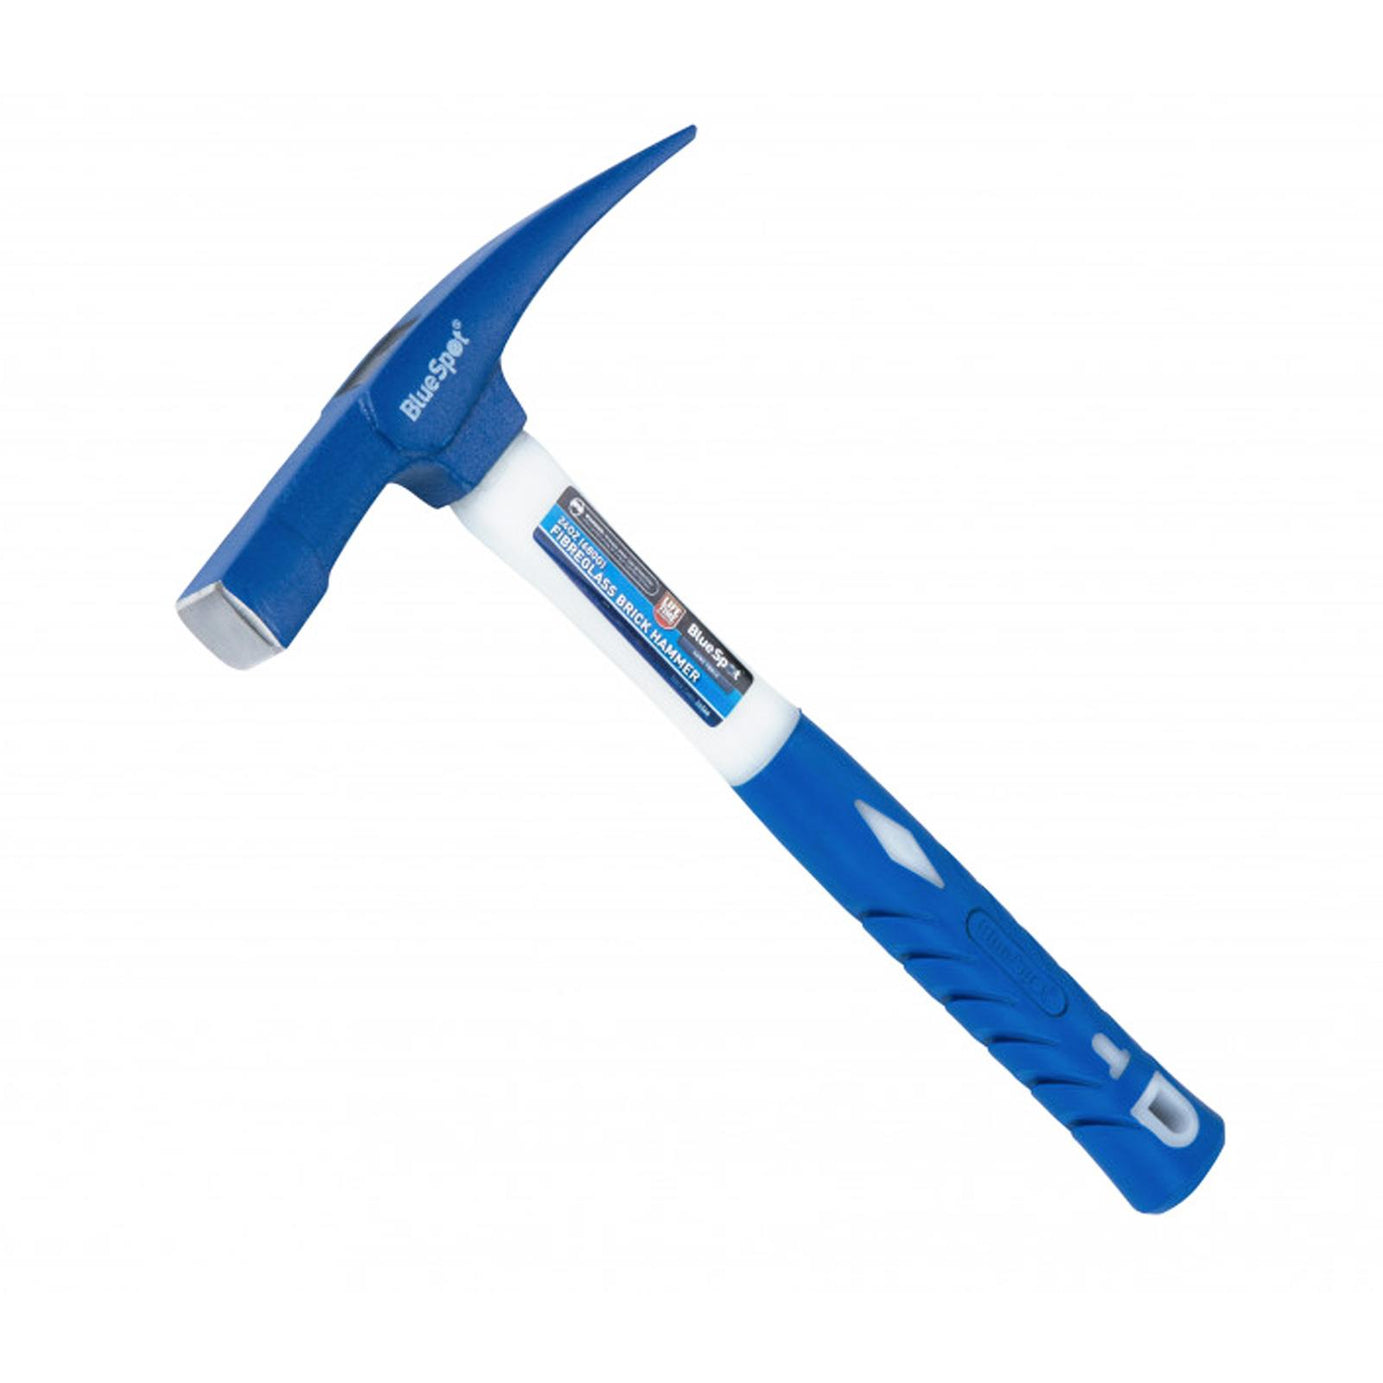 BlueSpot 24oz (680g) Fibreglass Shaft Brick Hammer Rubber Grip Lifetime Warranty